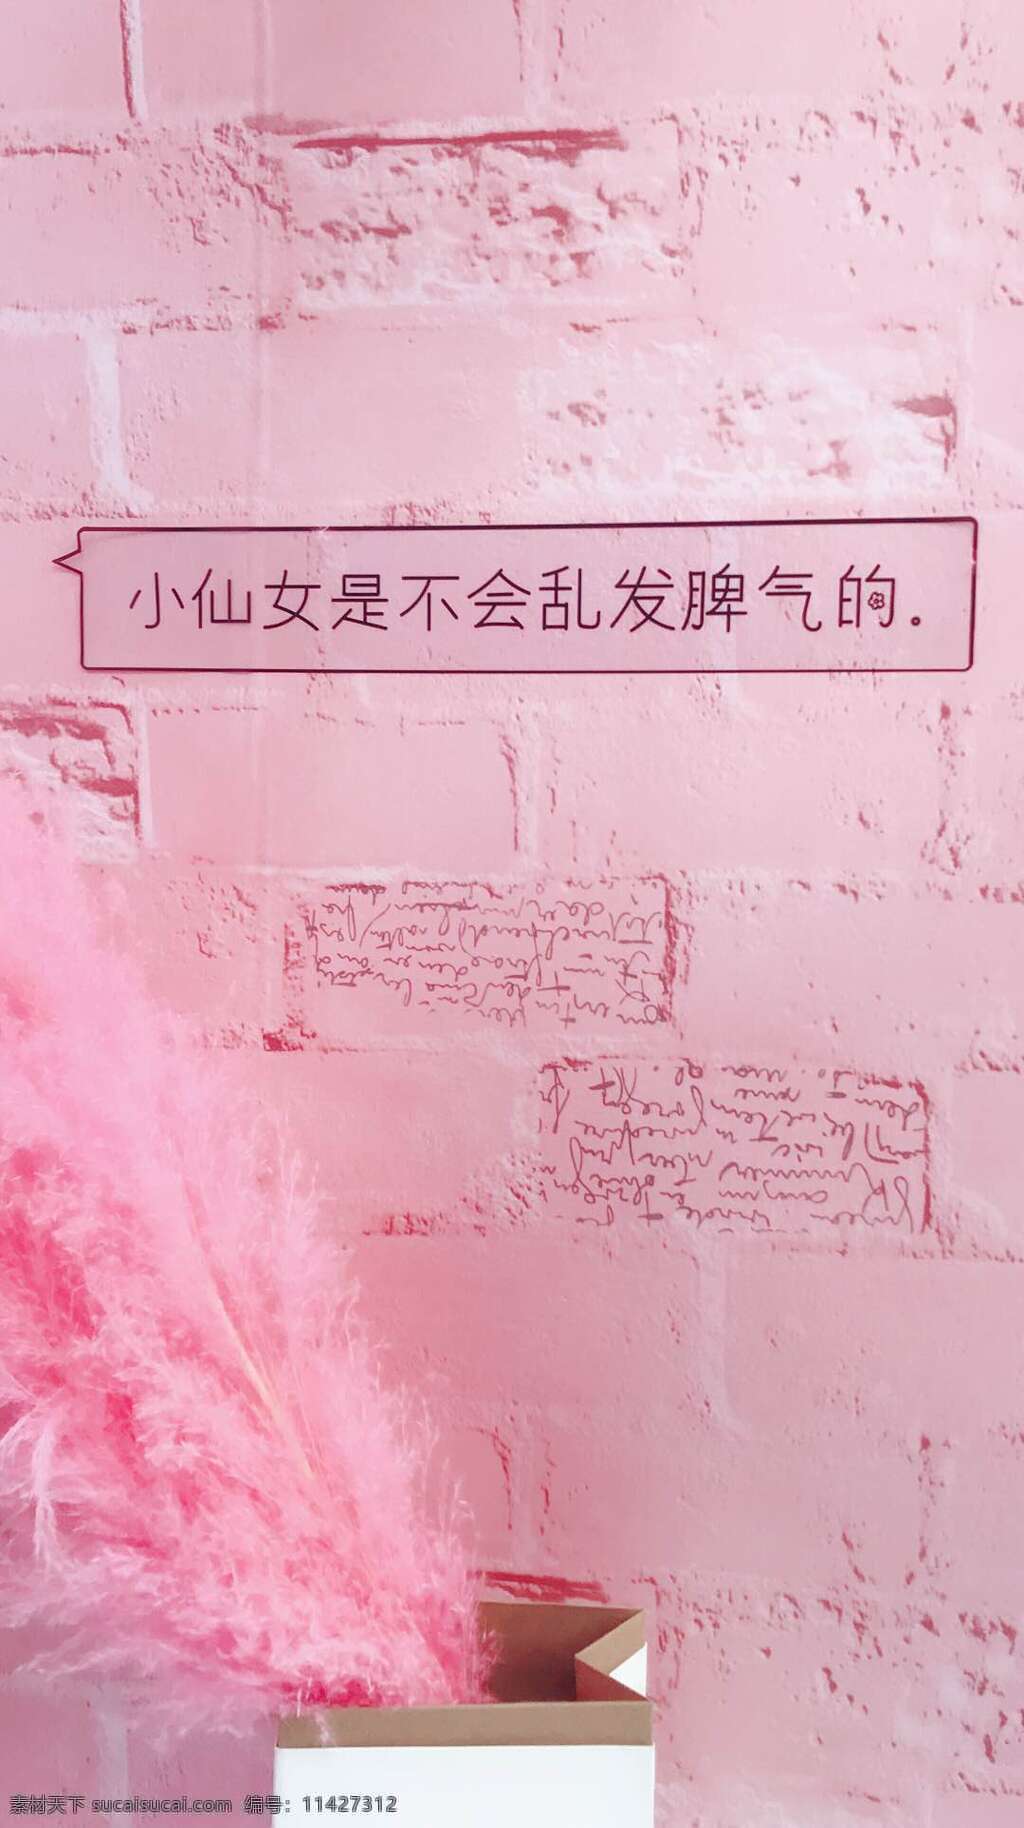 手机壁纸图 壁纸 粉色 少女 简约 马卡龙色 旅游摄影 国内旅游